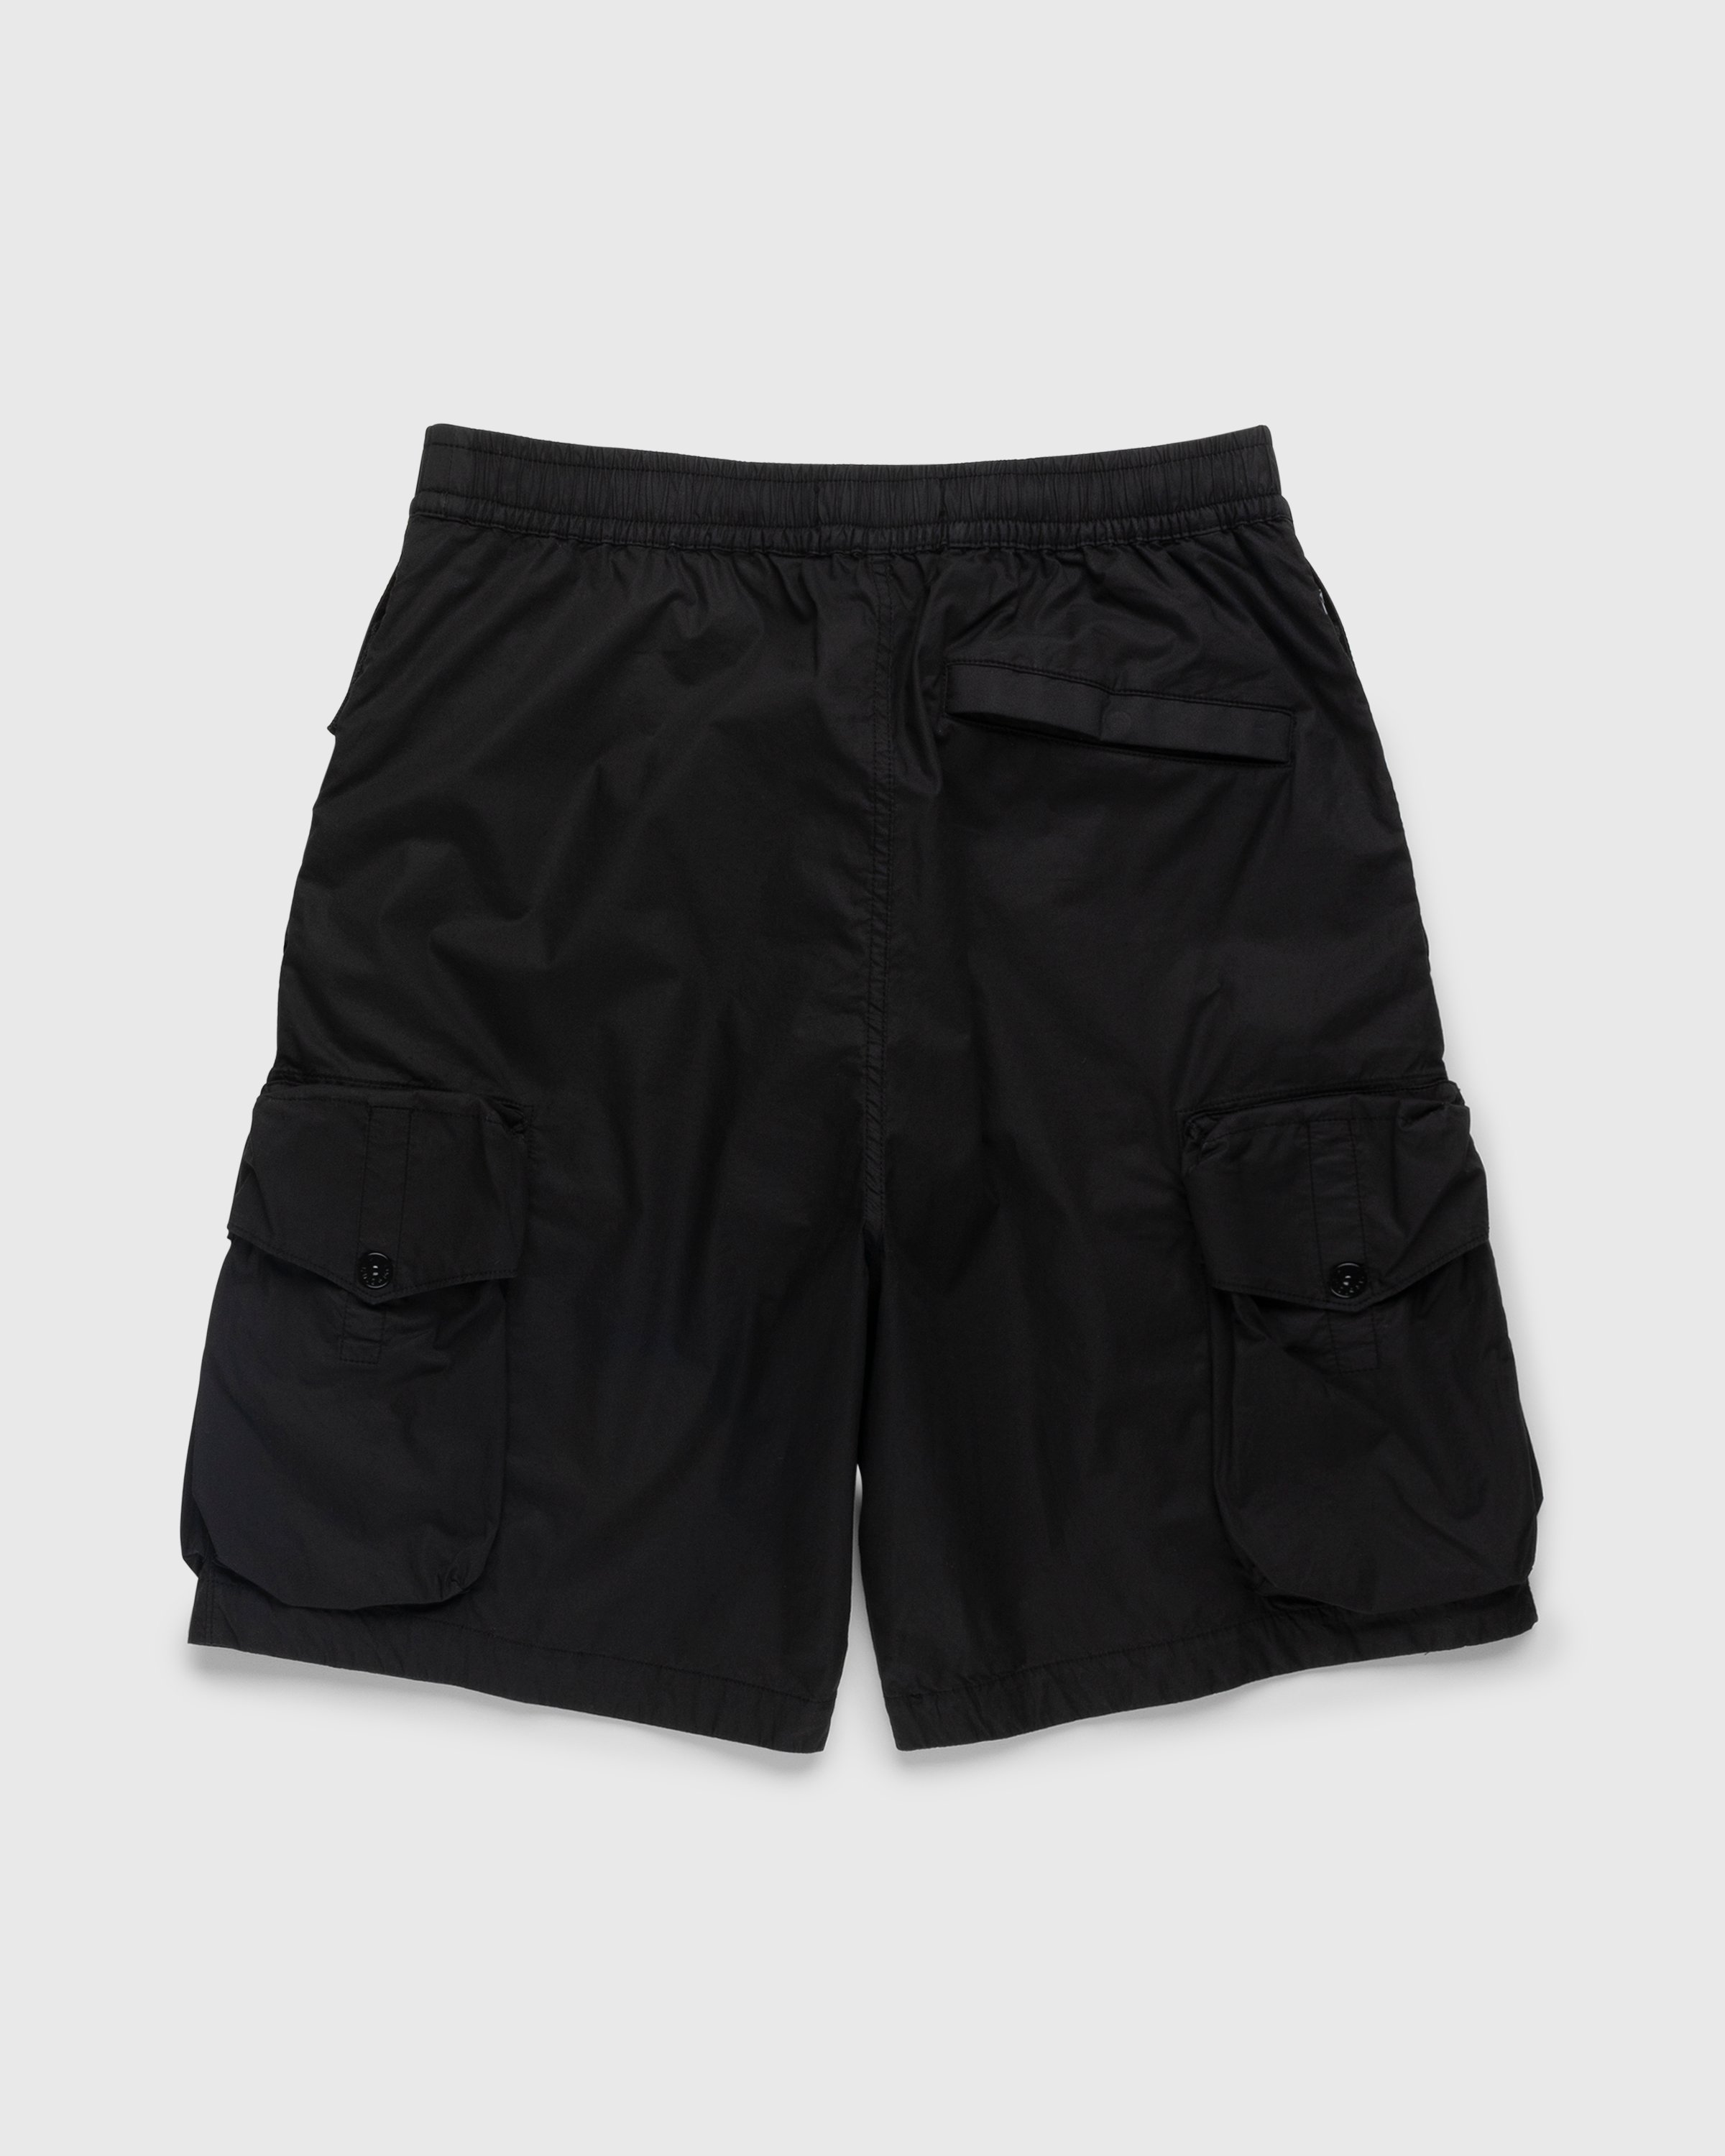 Stone Island - L0103 Garment-Dyed Shorts Black - Clothing - Black - Image 2